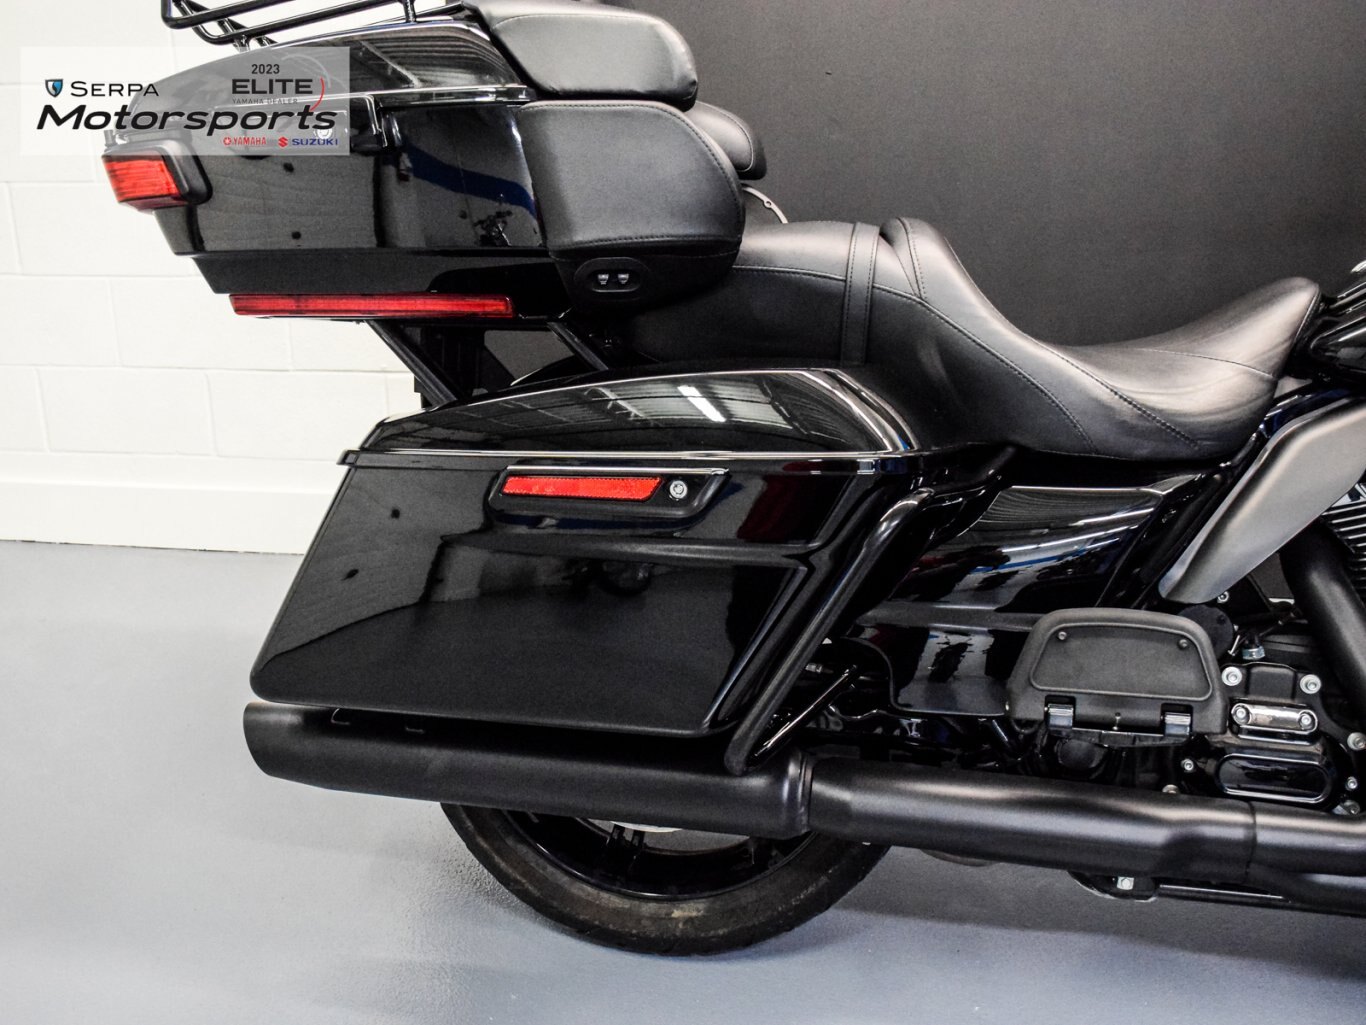 2022 Harley Davidson FLHTK Ultra Limited